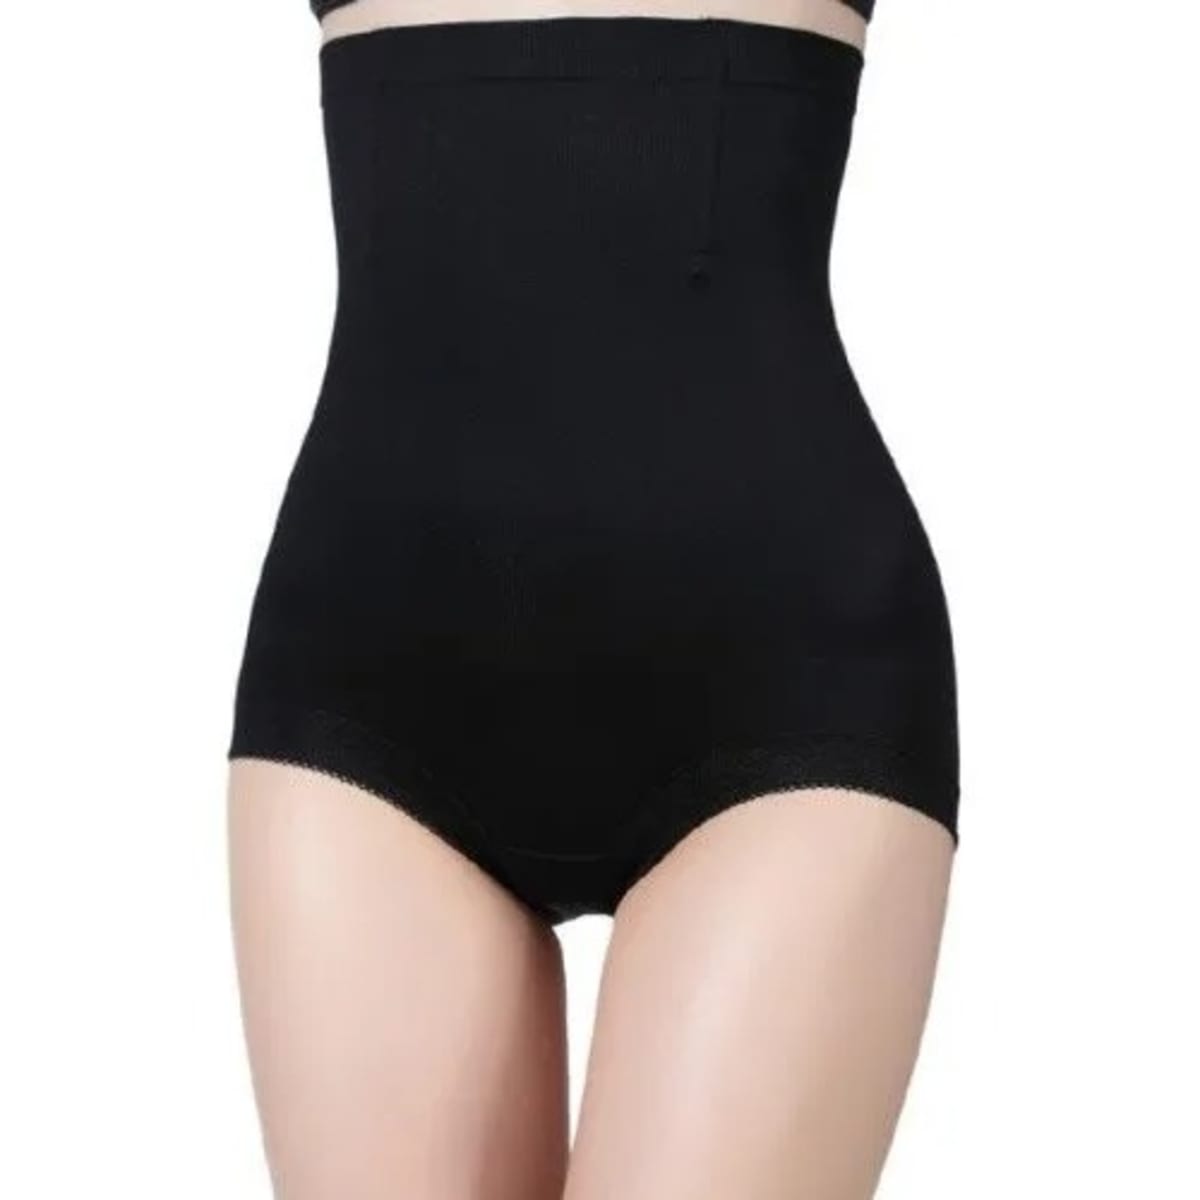 Women's Waist Trainer Tummy Control Underwear - Black